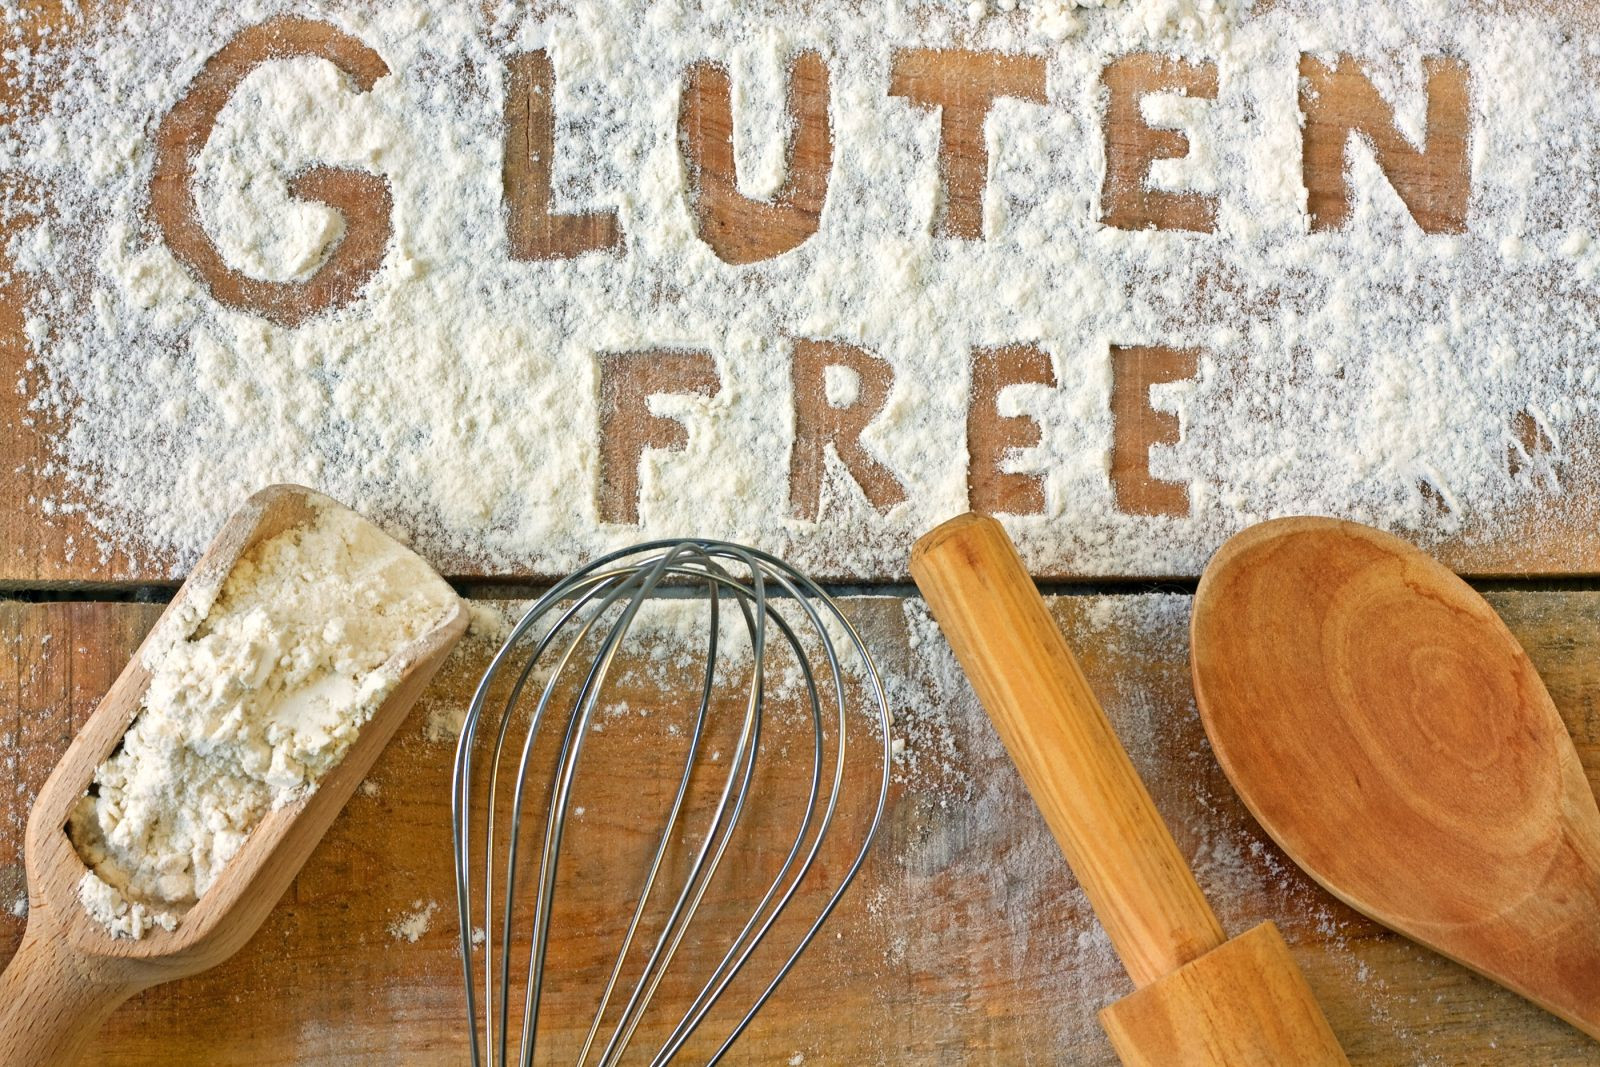 Baking utensils with the words "gluten free" written in flour. 